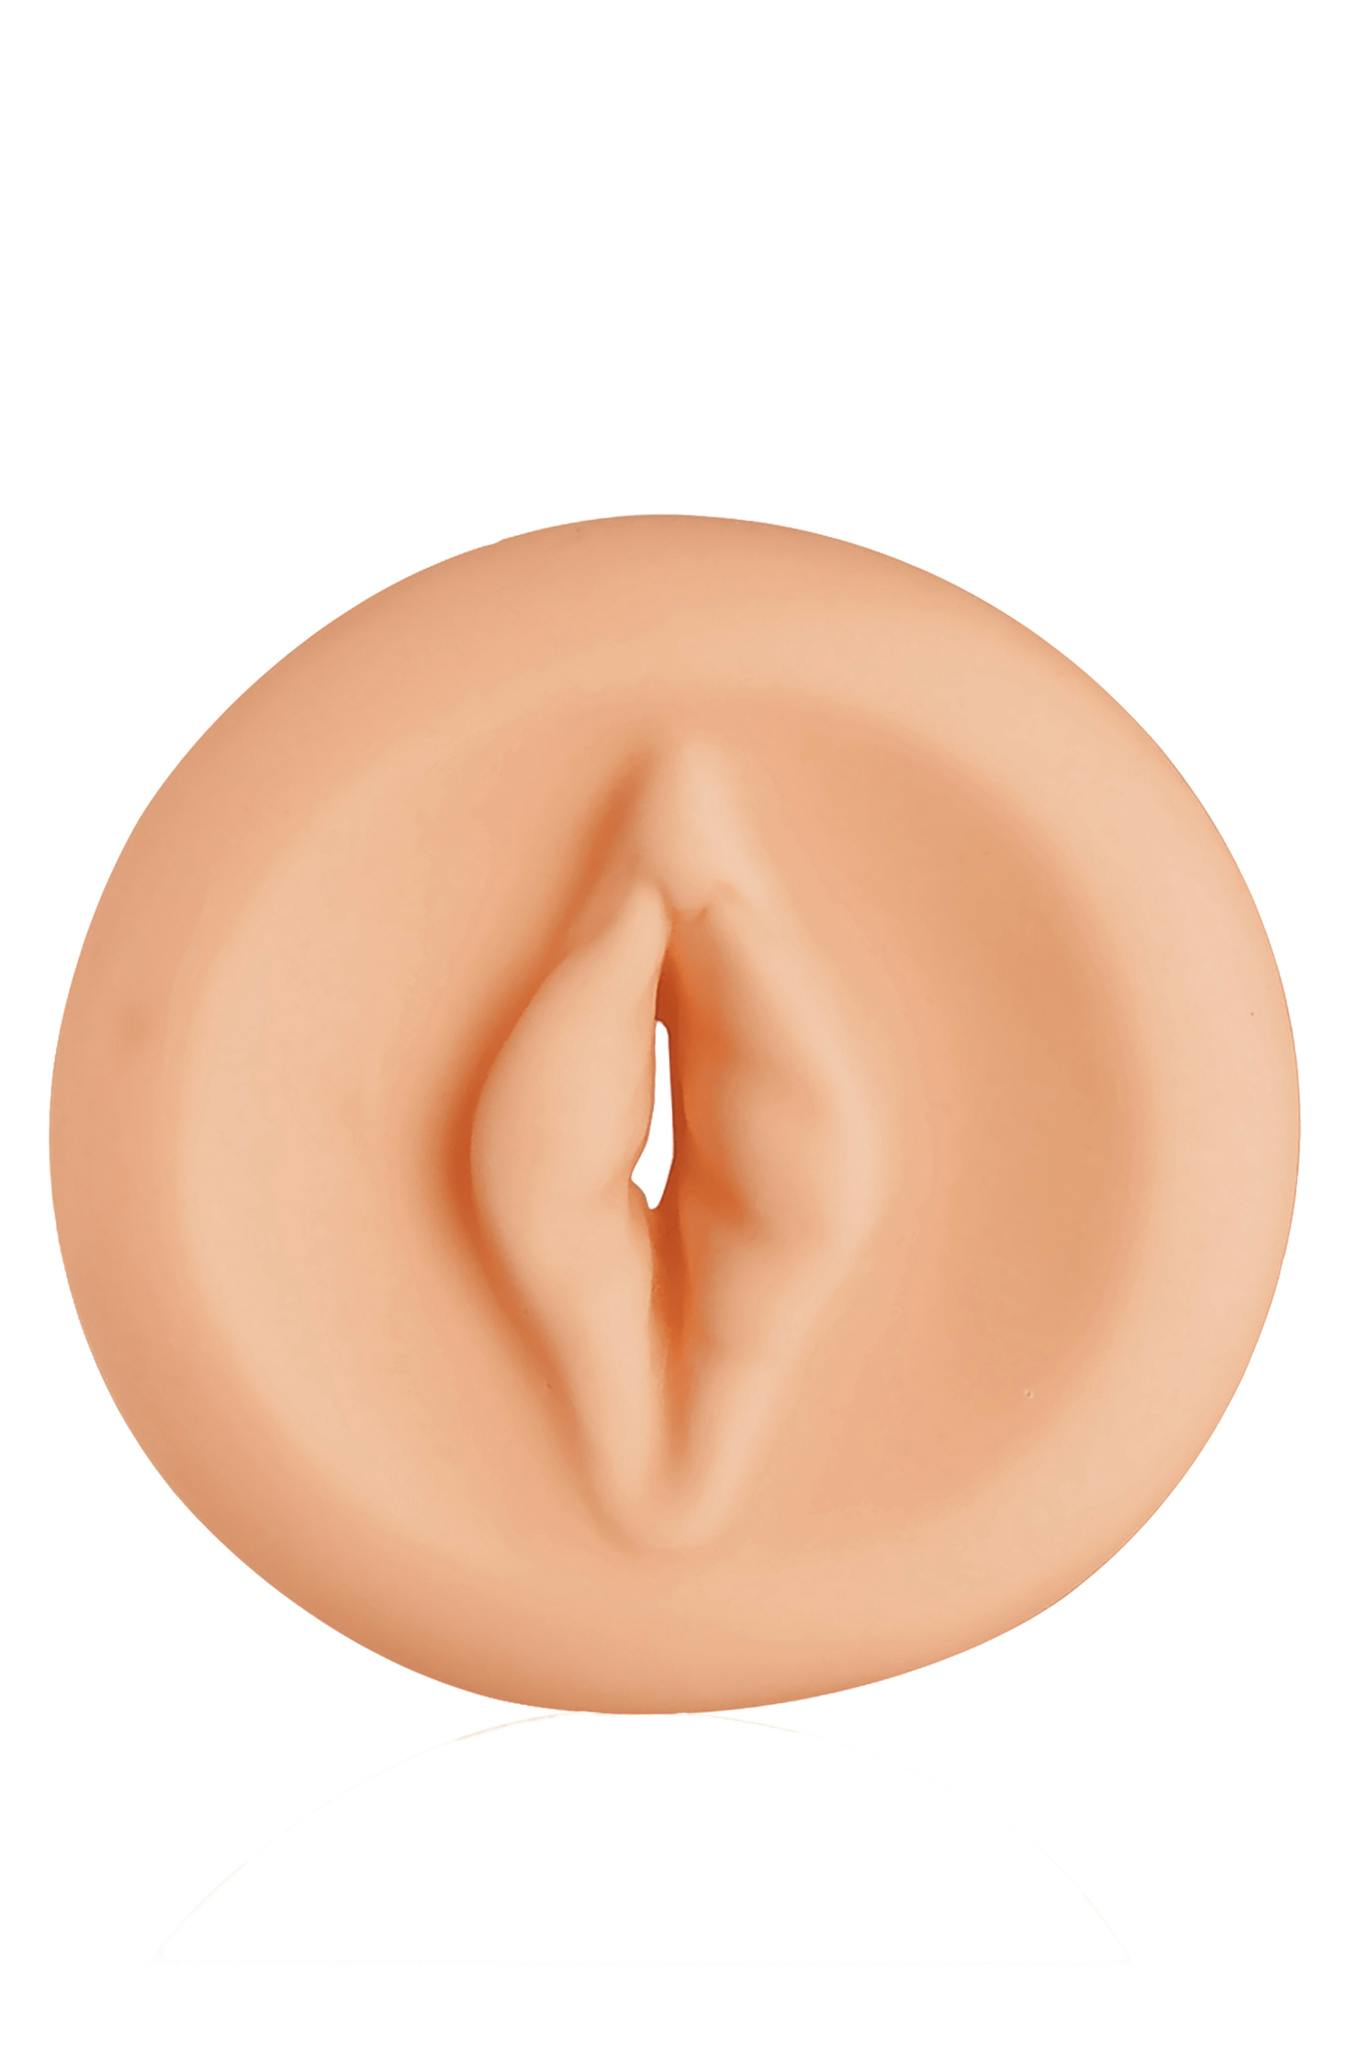 Ramrod - Pump sleeve vagina